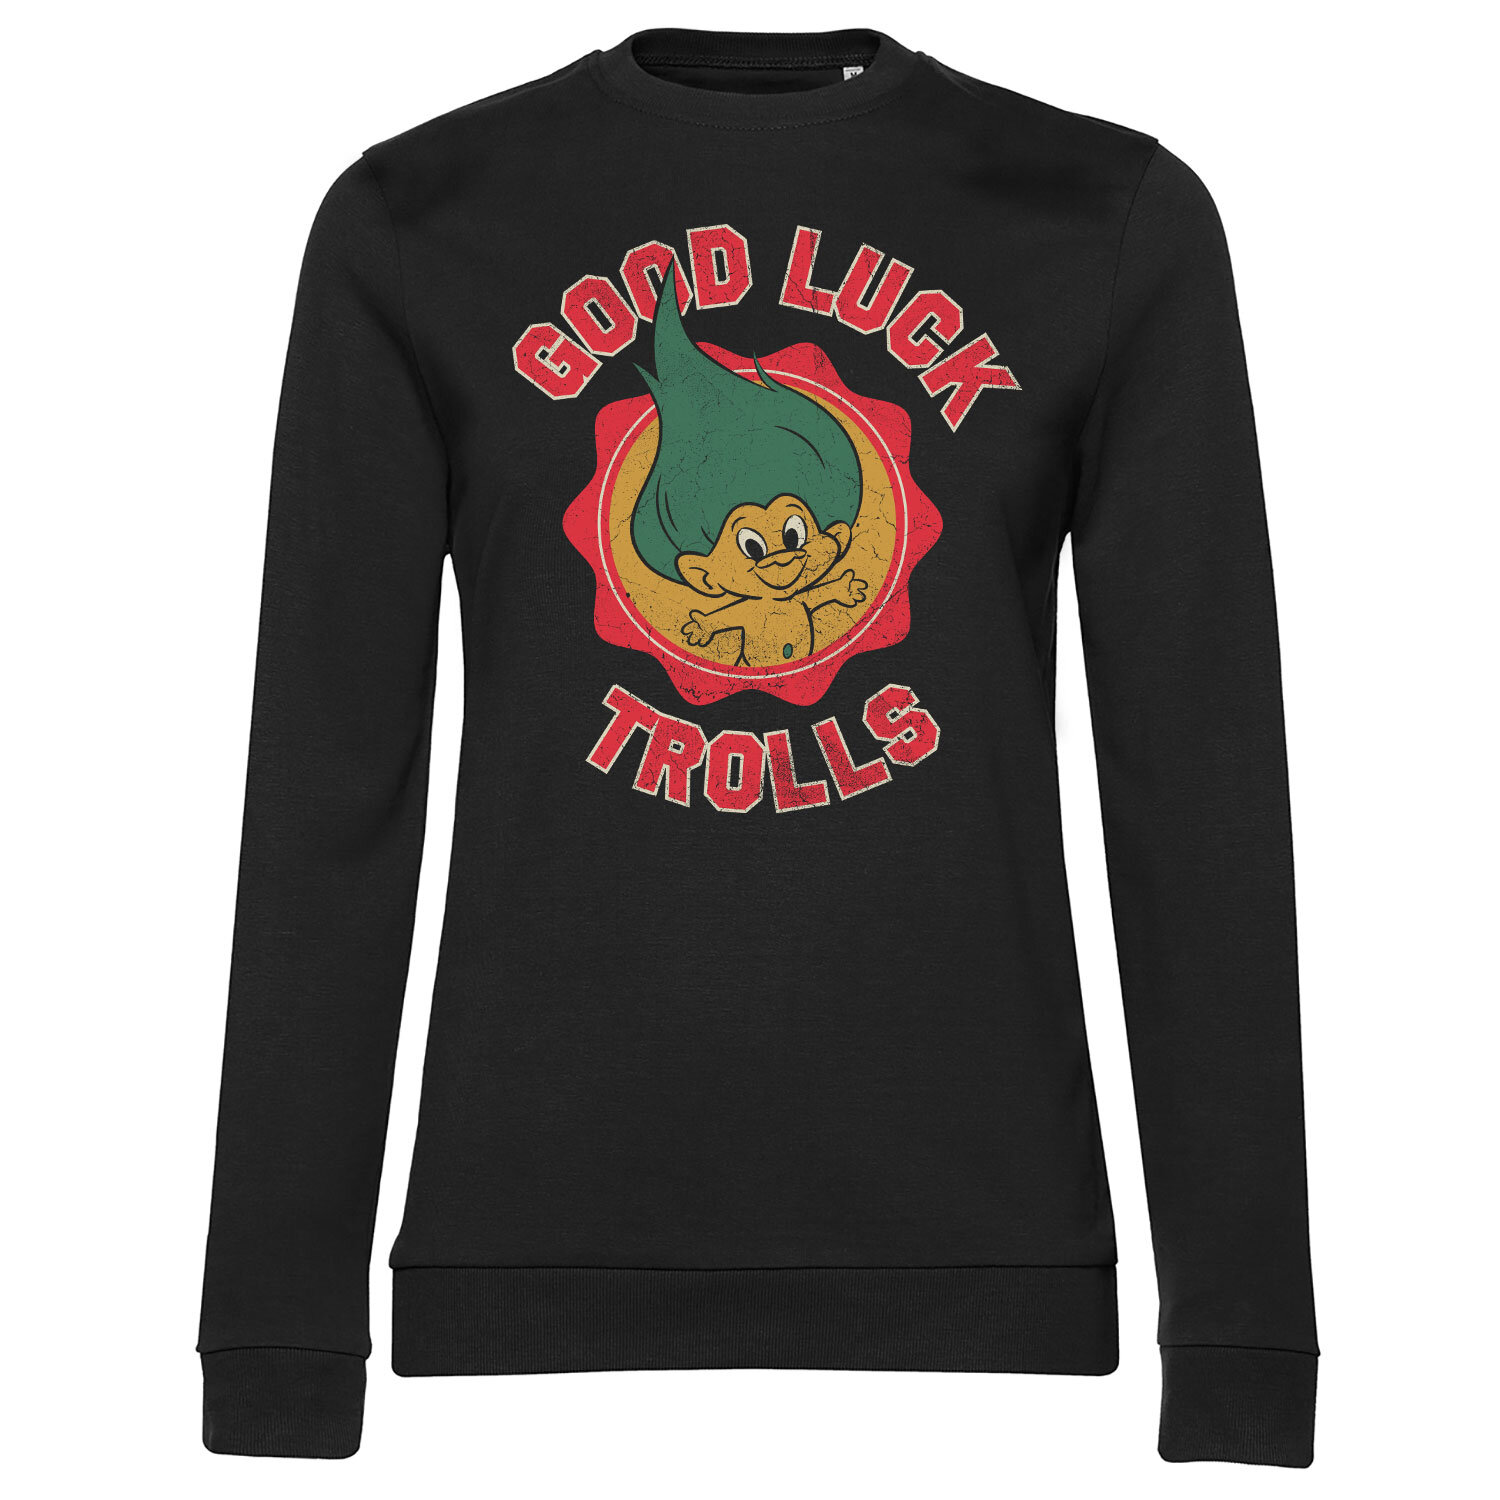 Good Luck Trolls Girly Sweatshirt